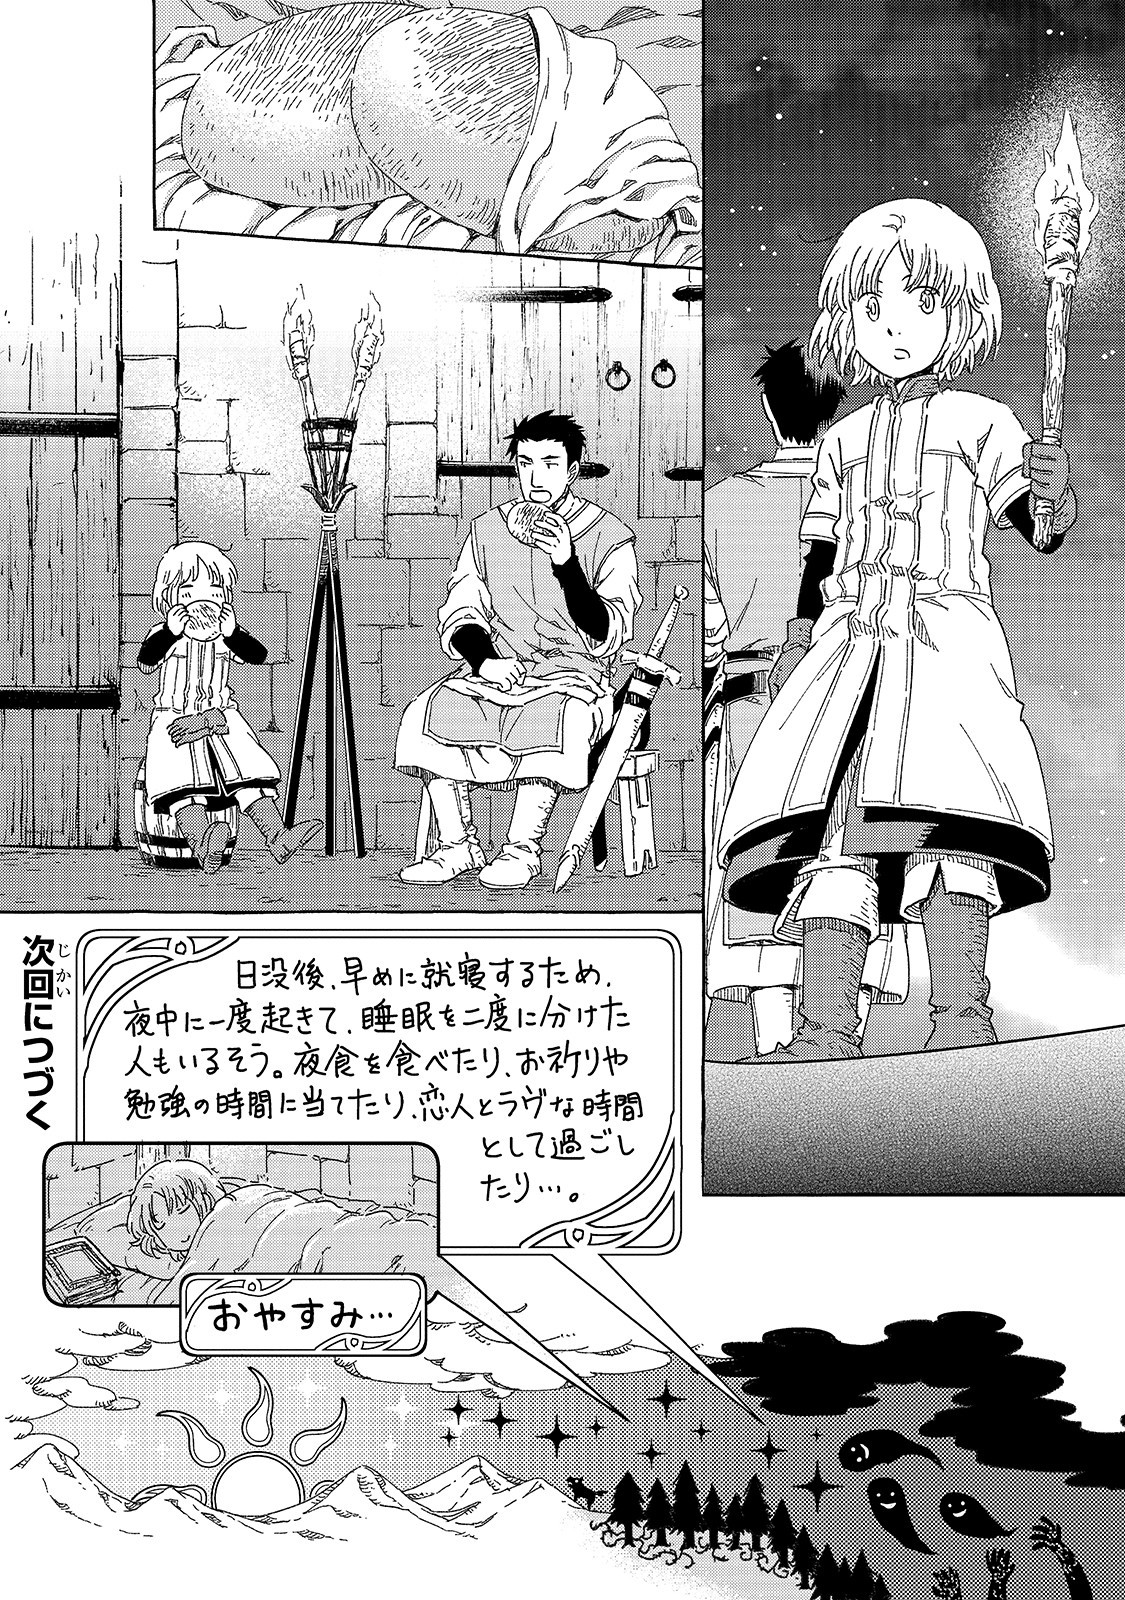 Kishitan wa Jouheki no Naka ni Hanahiraku - Chapter 14.5 - Page 6